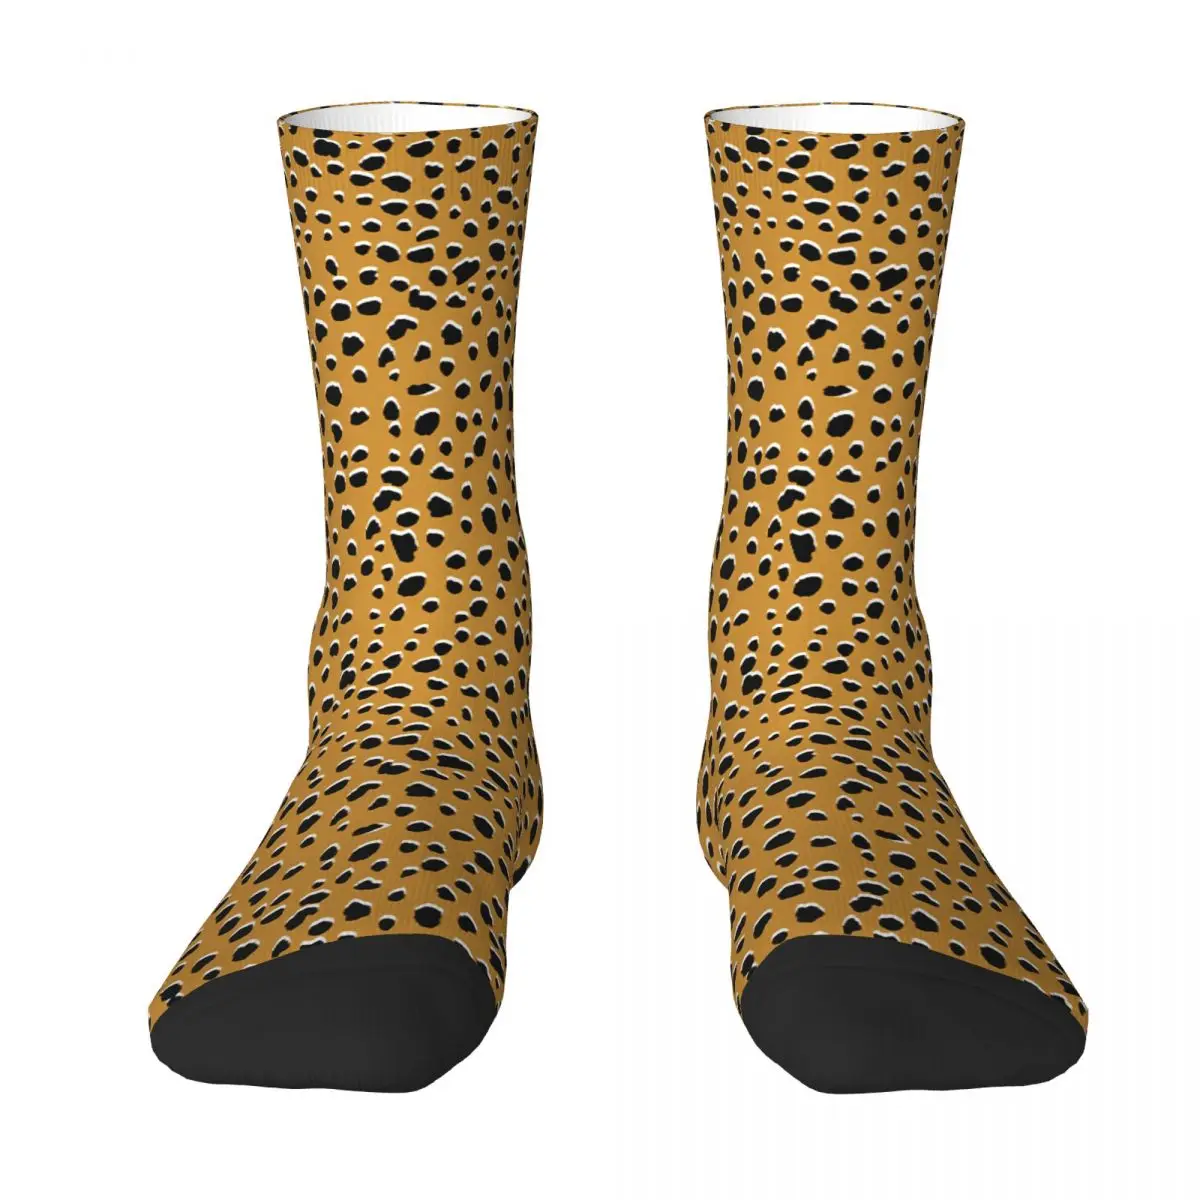 Бесшовные носки для взрослых с леопардовым принтом гепарда, носки унисекс, мужские носки, женские носки носки носки унисекс носки с принтом яркие носки носки чпрльз дарвин